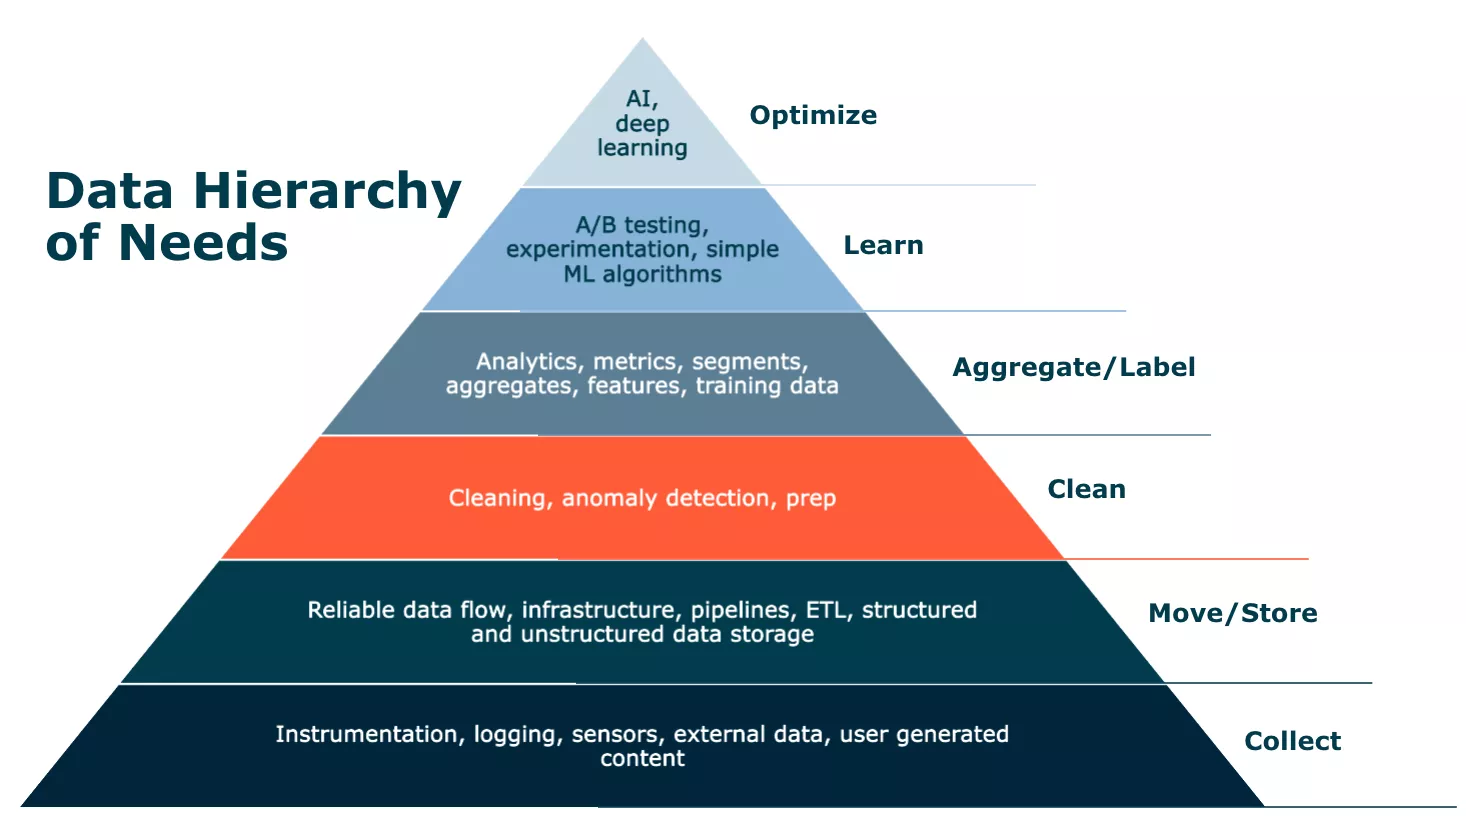 Data hierarchy